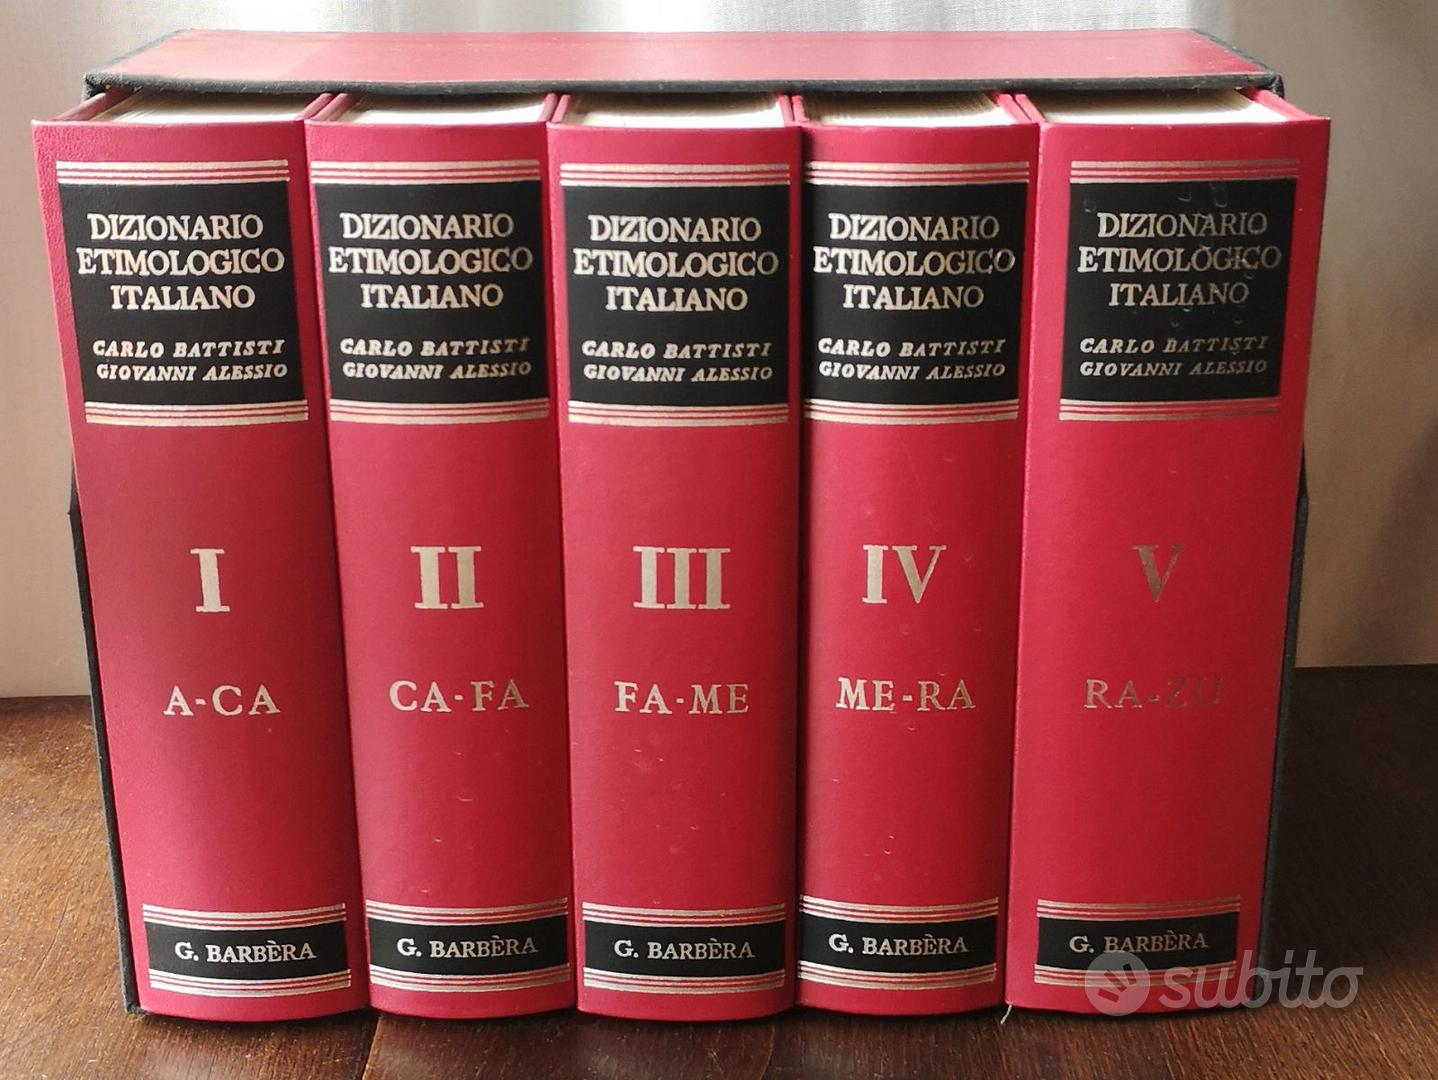 Dizionario etimologico, completo 5 volumi 1975 - Libri e Riviste In vendita  a Firenze